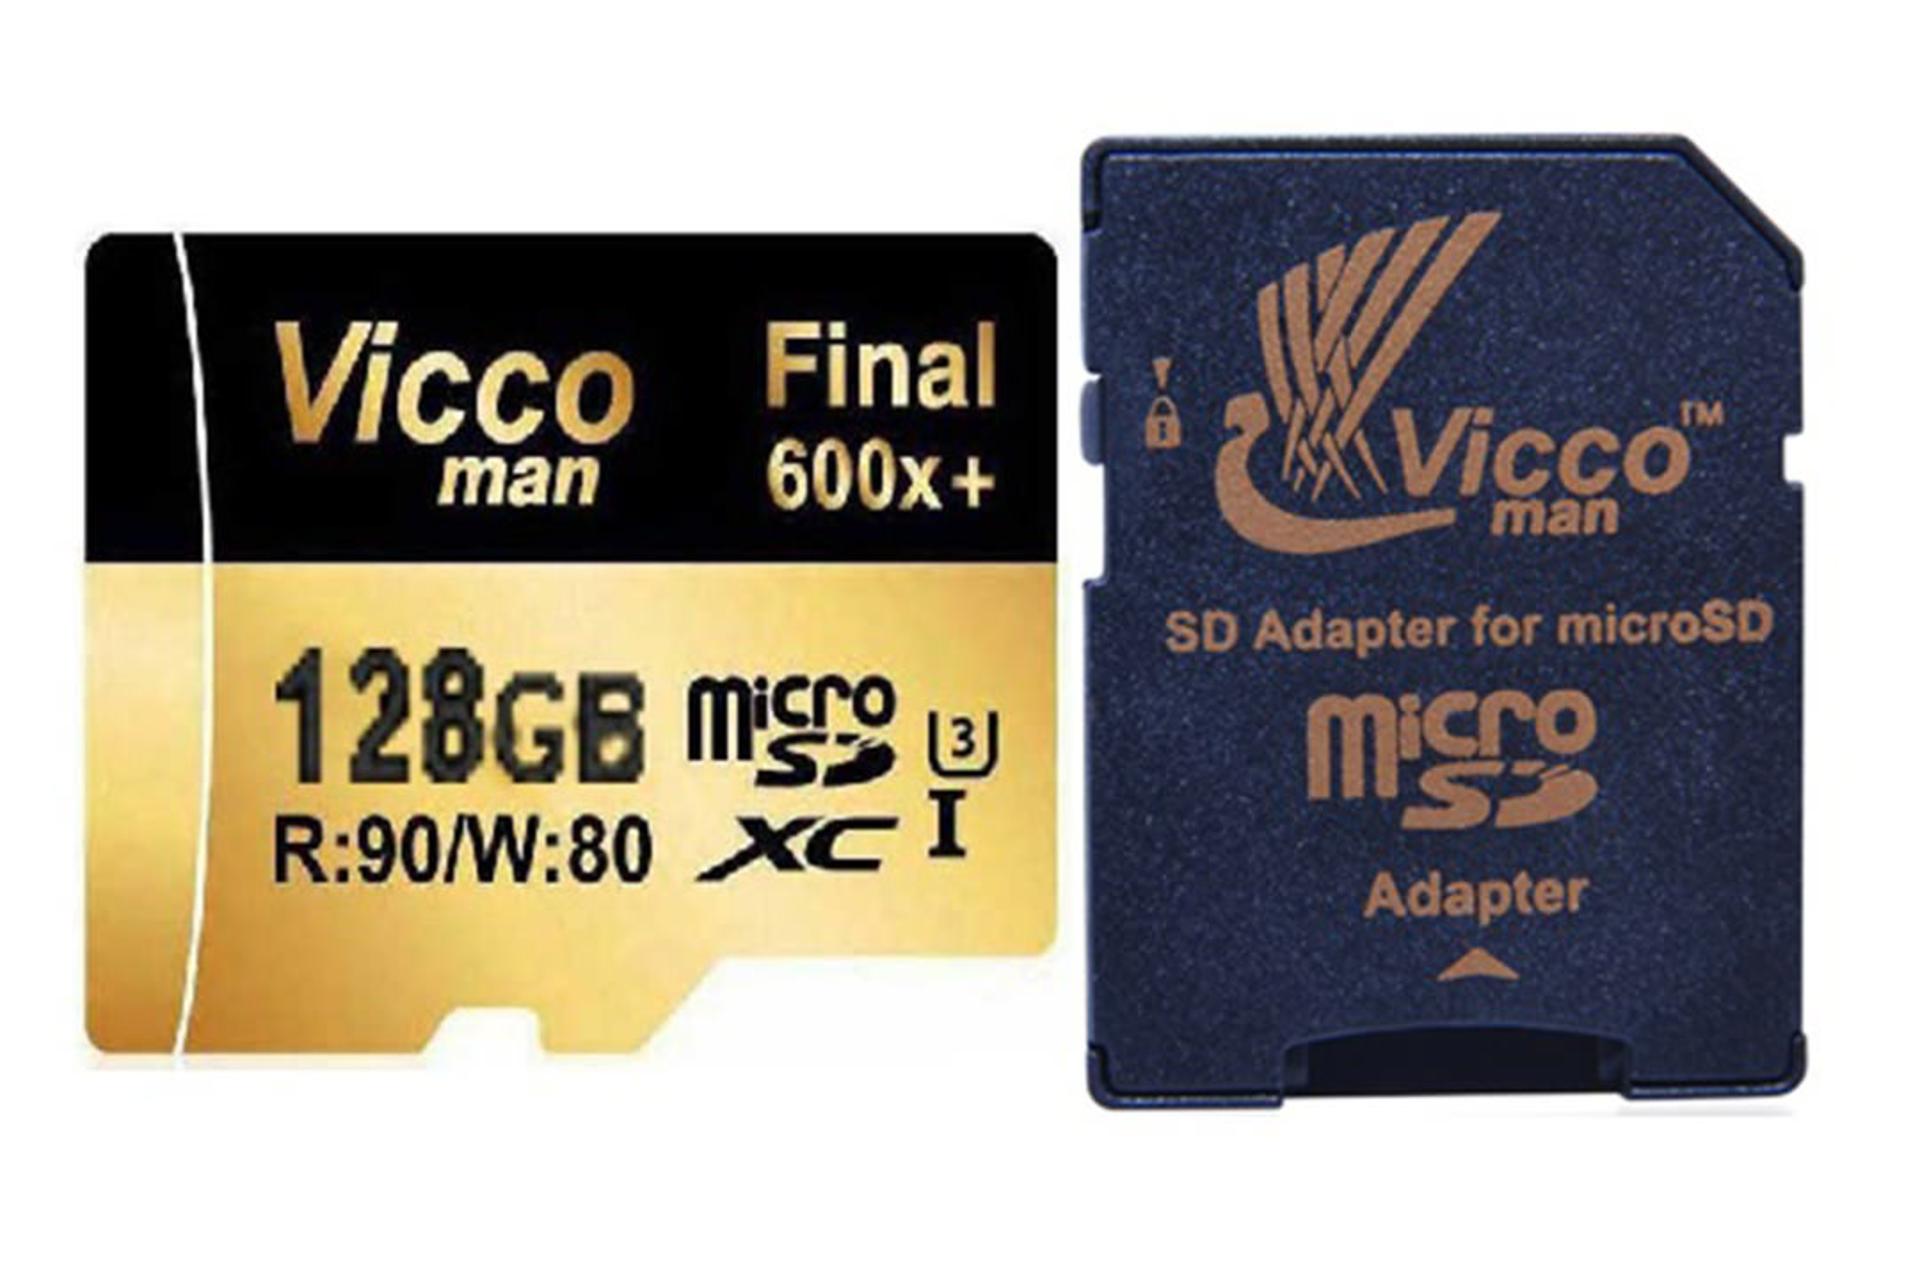 مرجع متخصصين ايران Viccoman Final 600x microSDHC Class 10 UHS-I U3 128GB